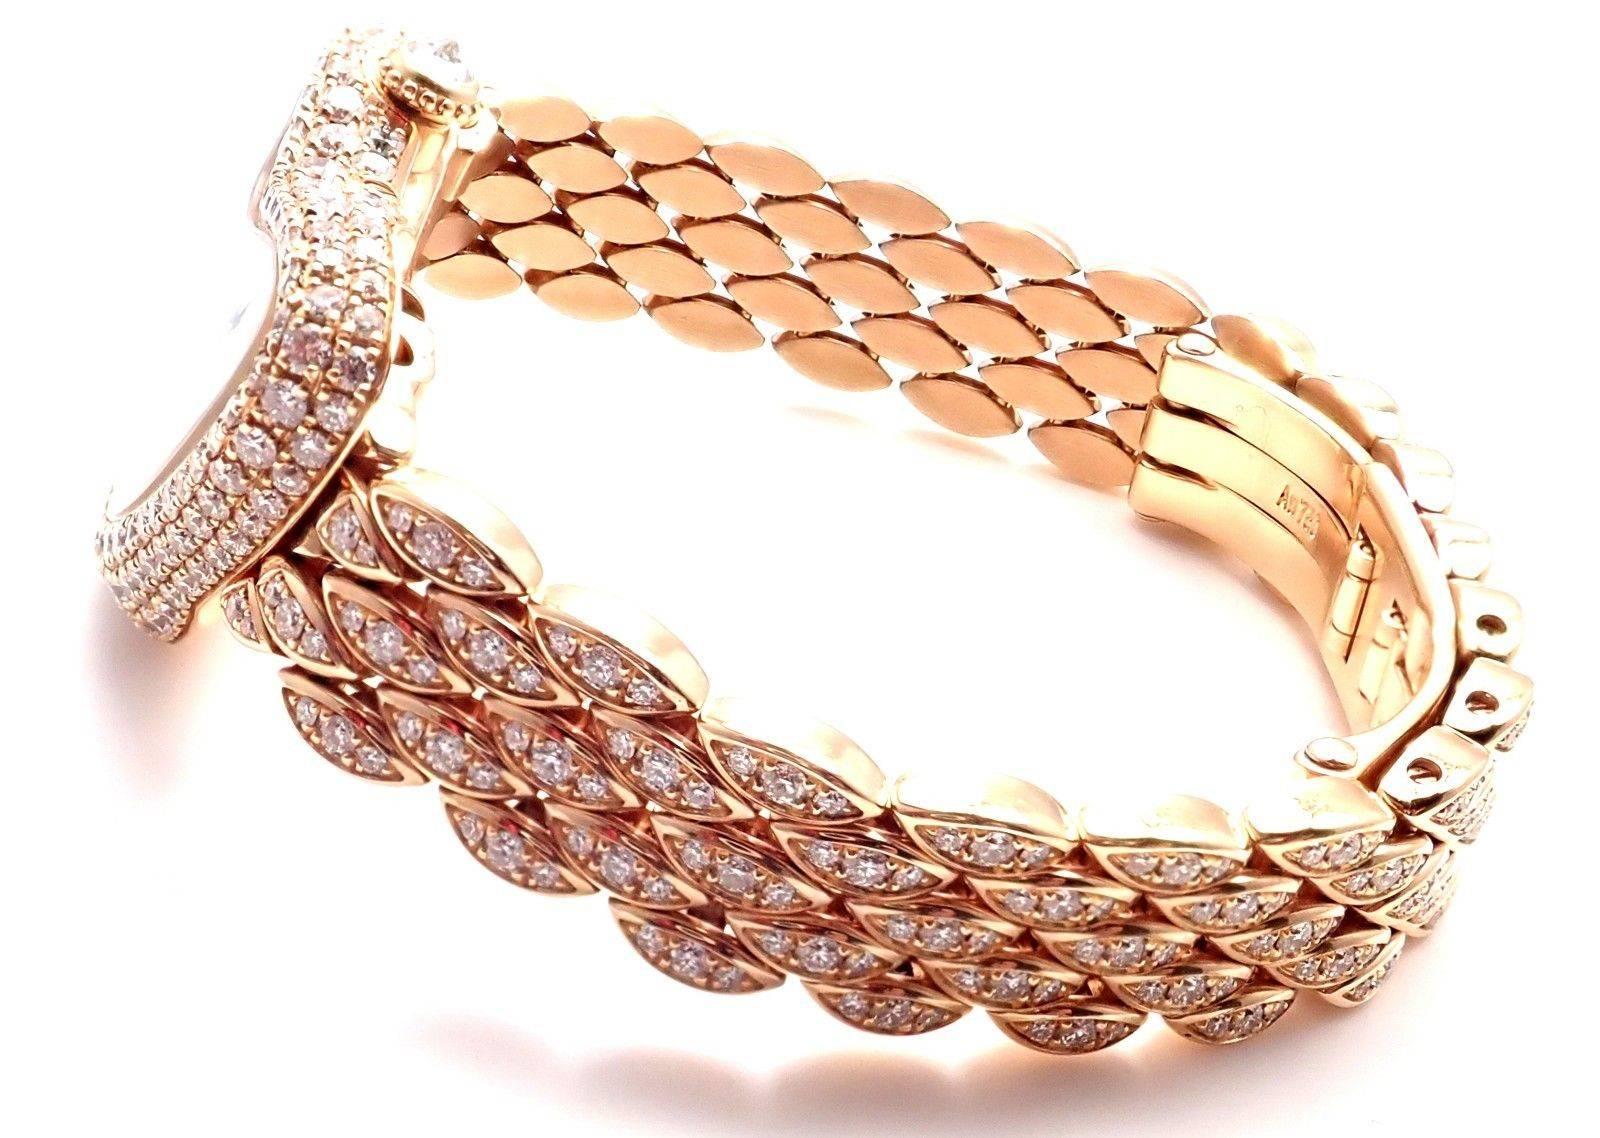 Montre-bracelet Crash Cartier en or rose et diamants édition limitée Ref HP100653 Neuf à Holland, PA